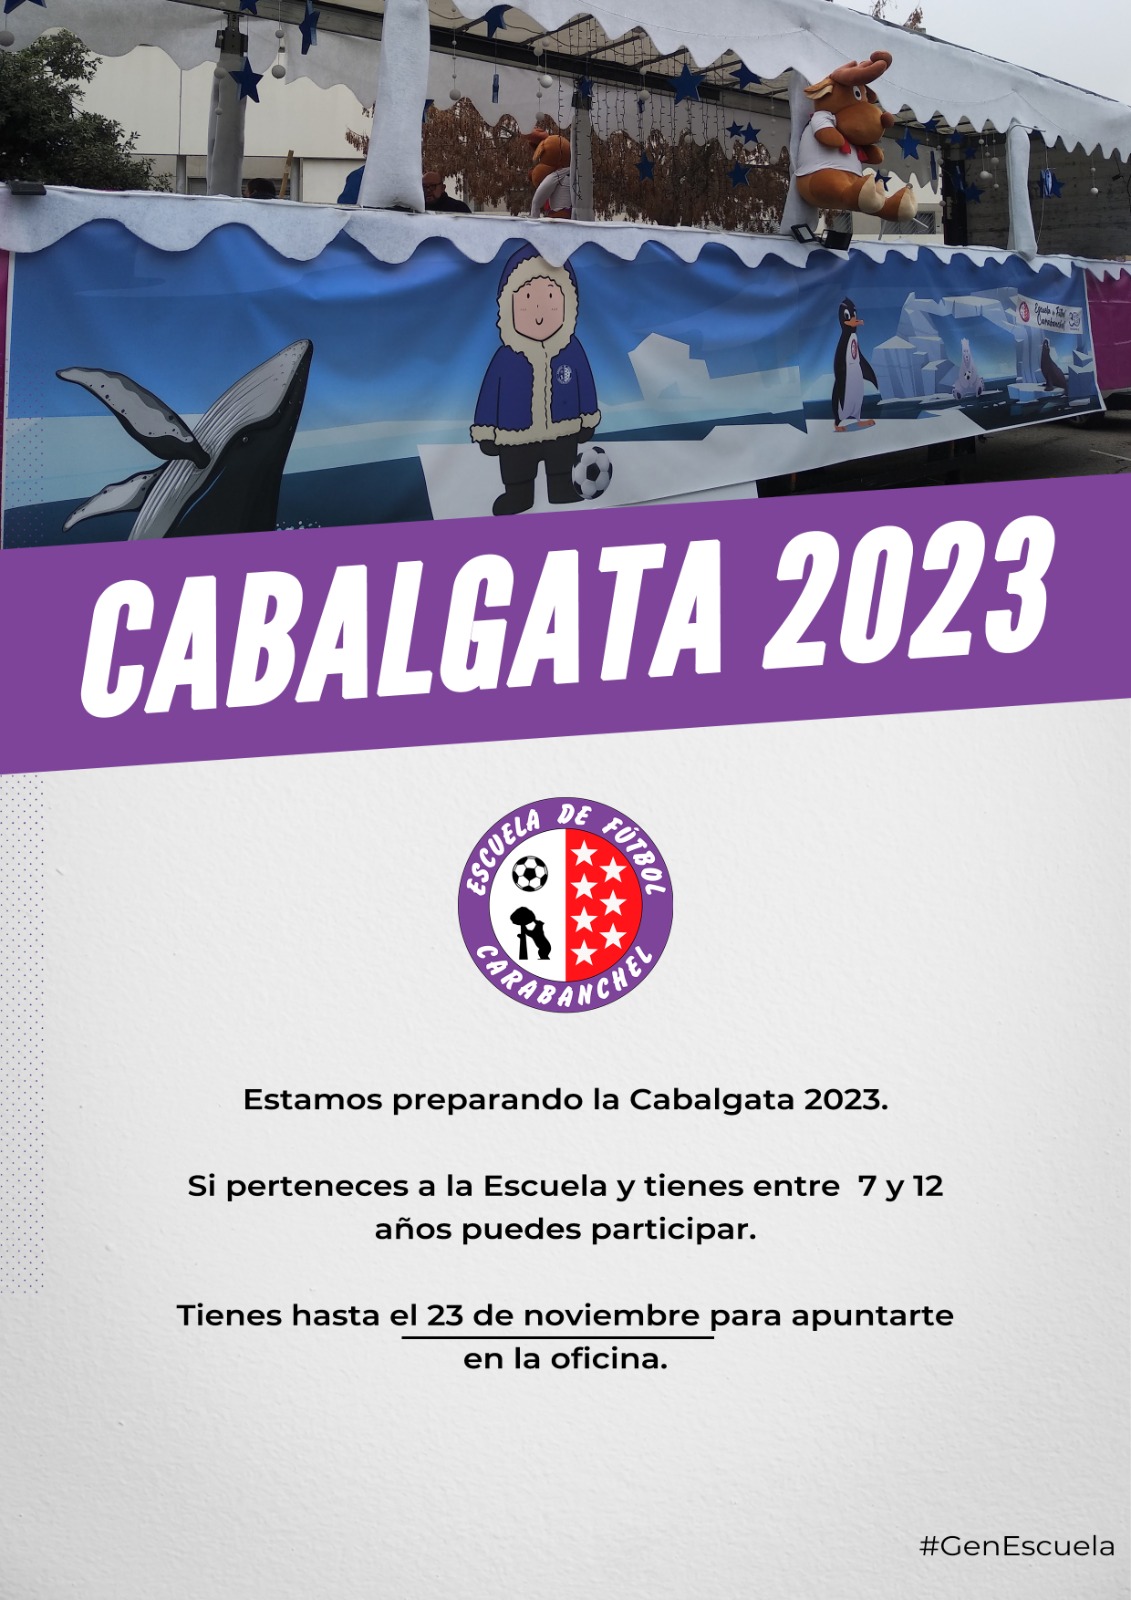 CABALGA DE REYES 2023